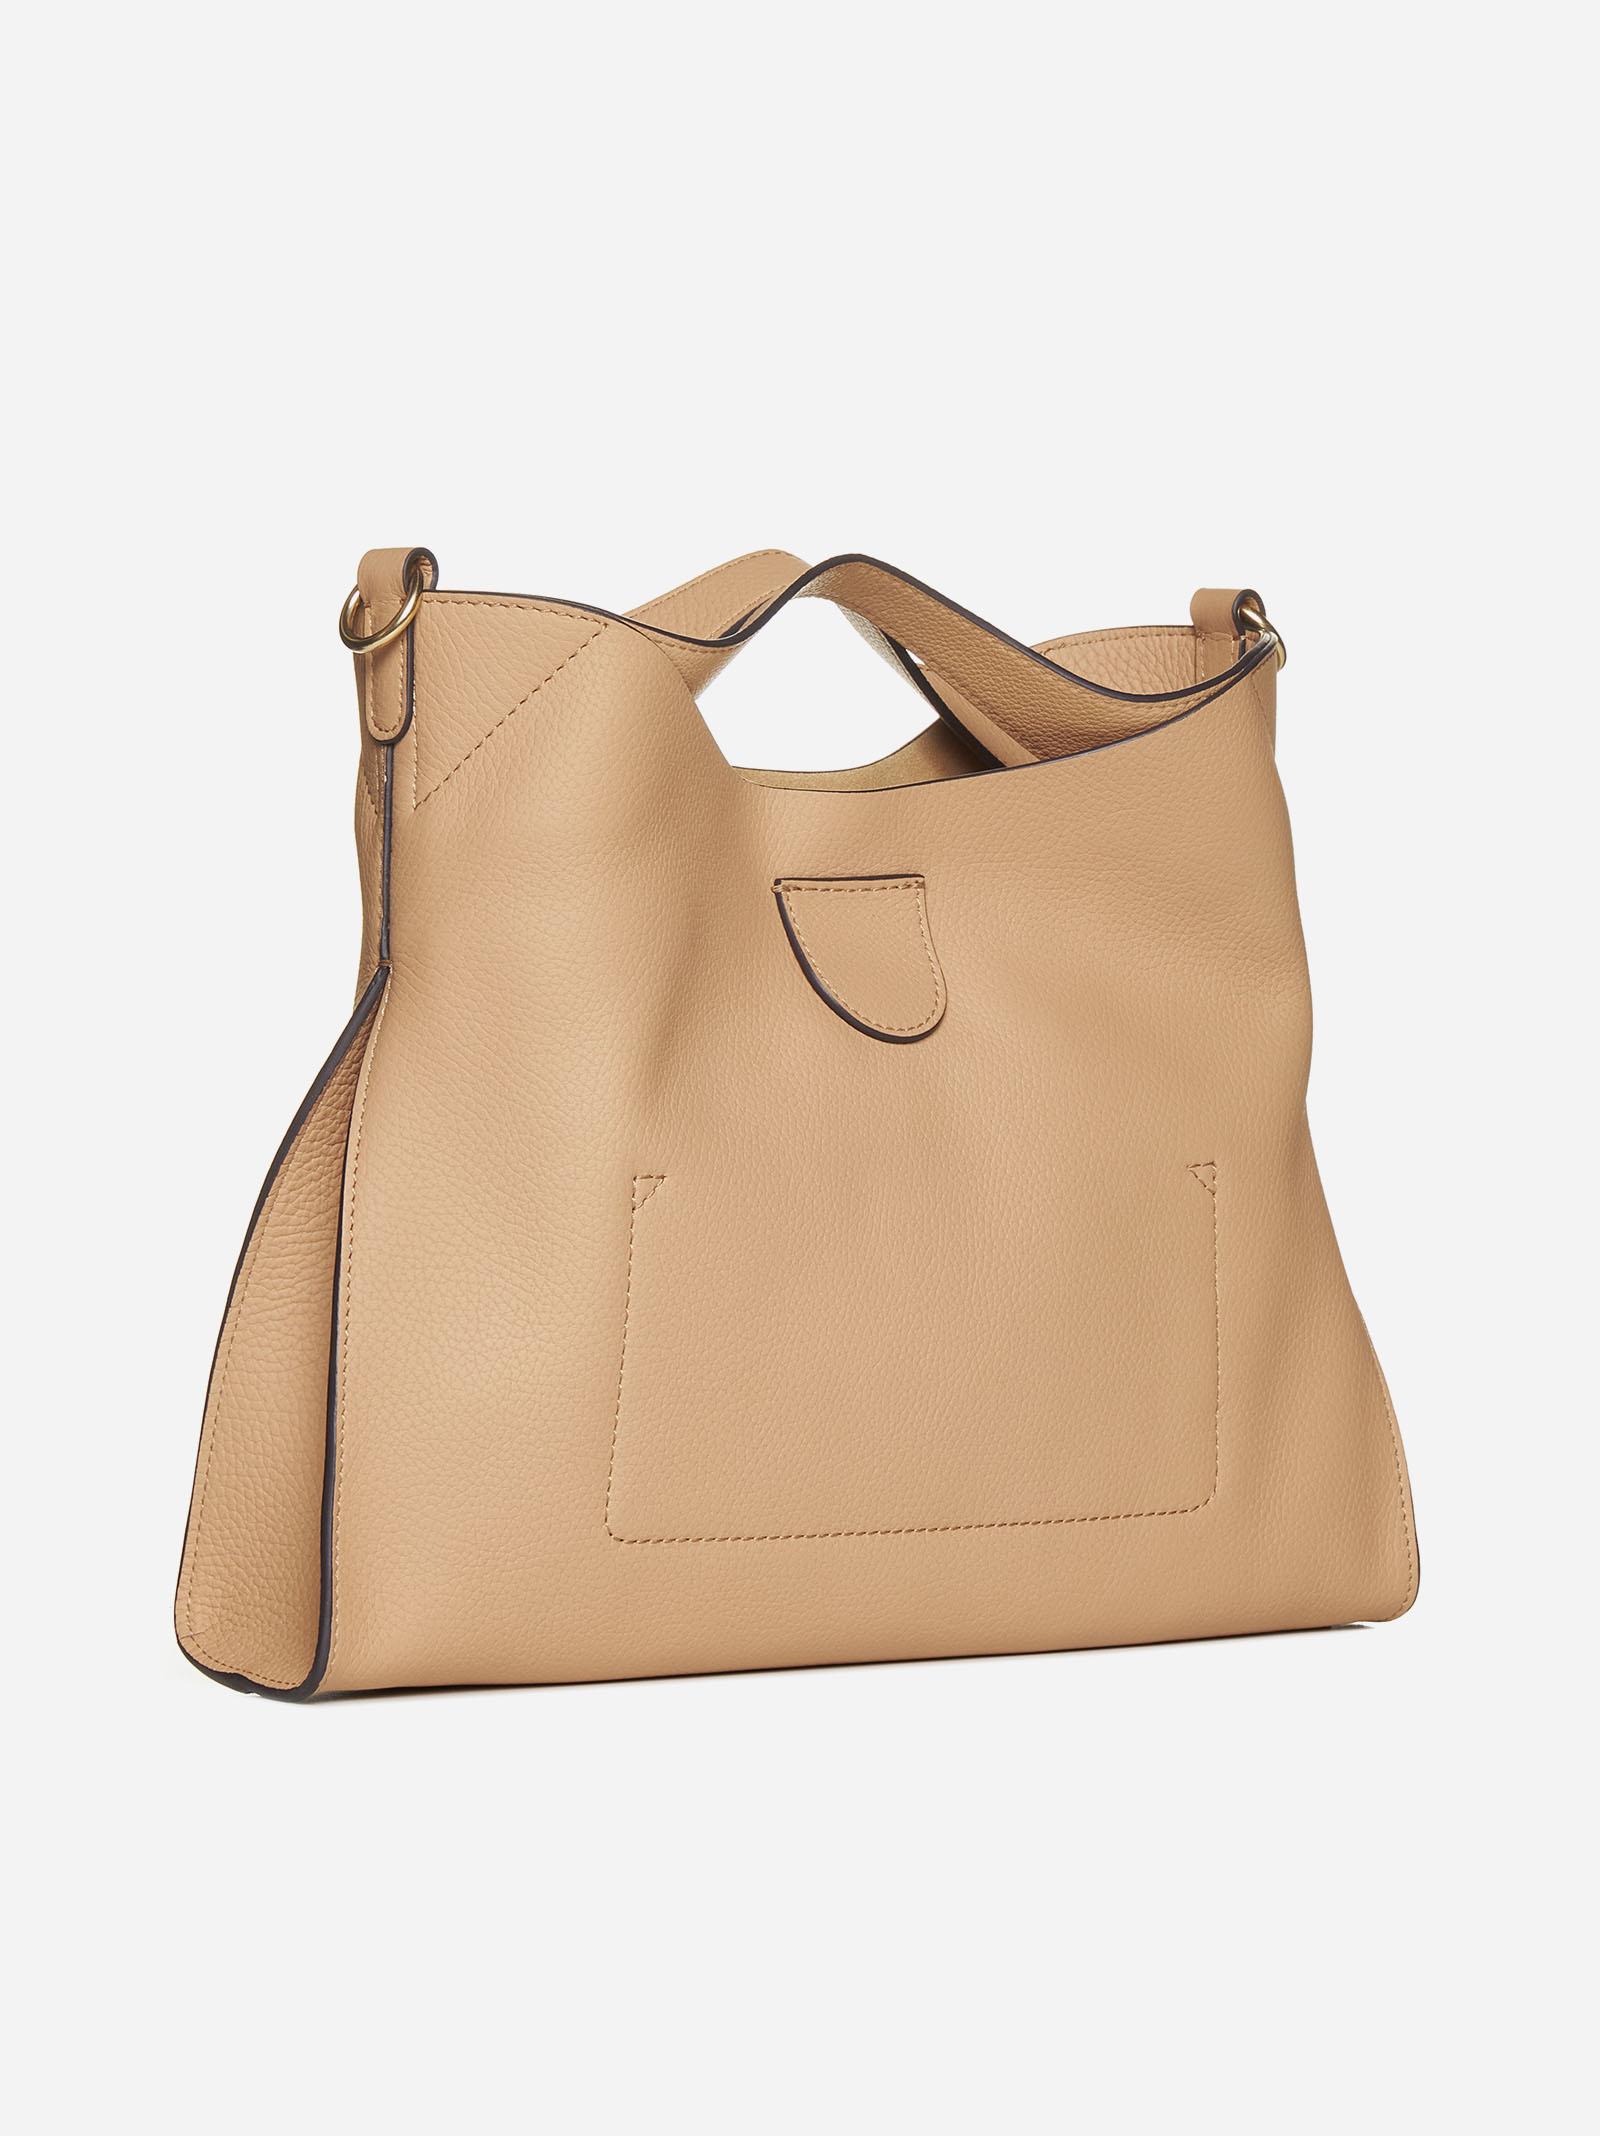 Longchamp Le Pliage Medium Cuir Tan Leather Shoulder Bag